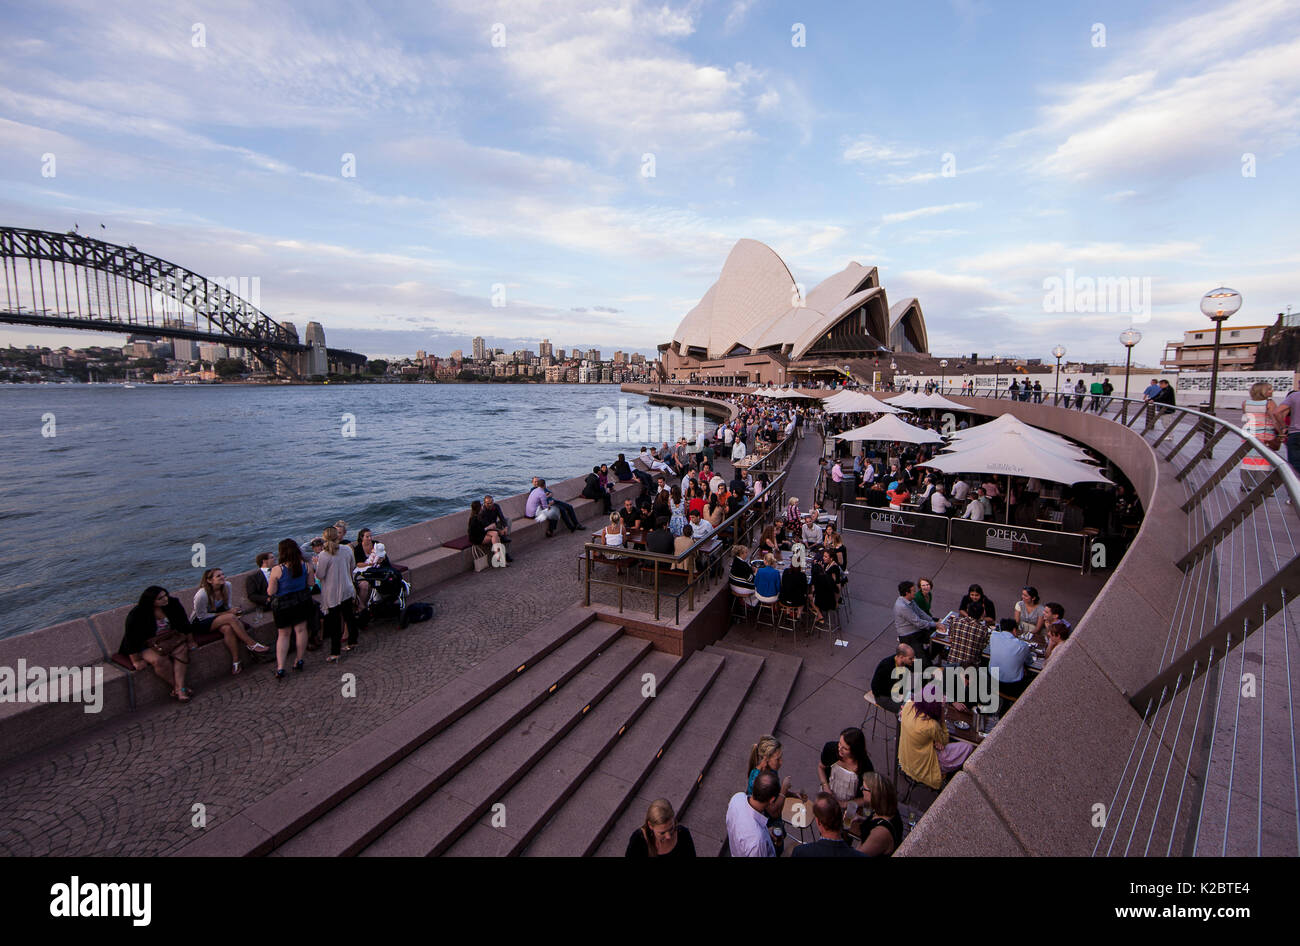 Les gens se détendre dans le port de Sydney, avec vue sur le Harbour Bridge et l'Opera House, New South Wales, Australie. Novembre 2012. Banque D'Images